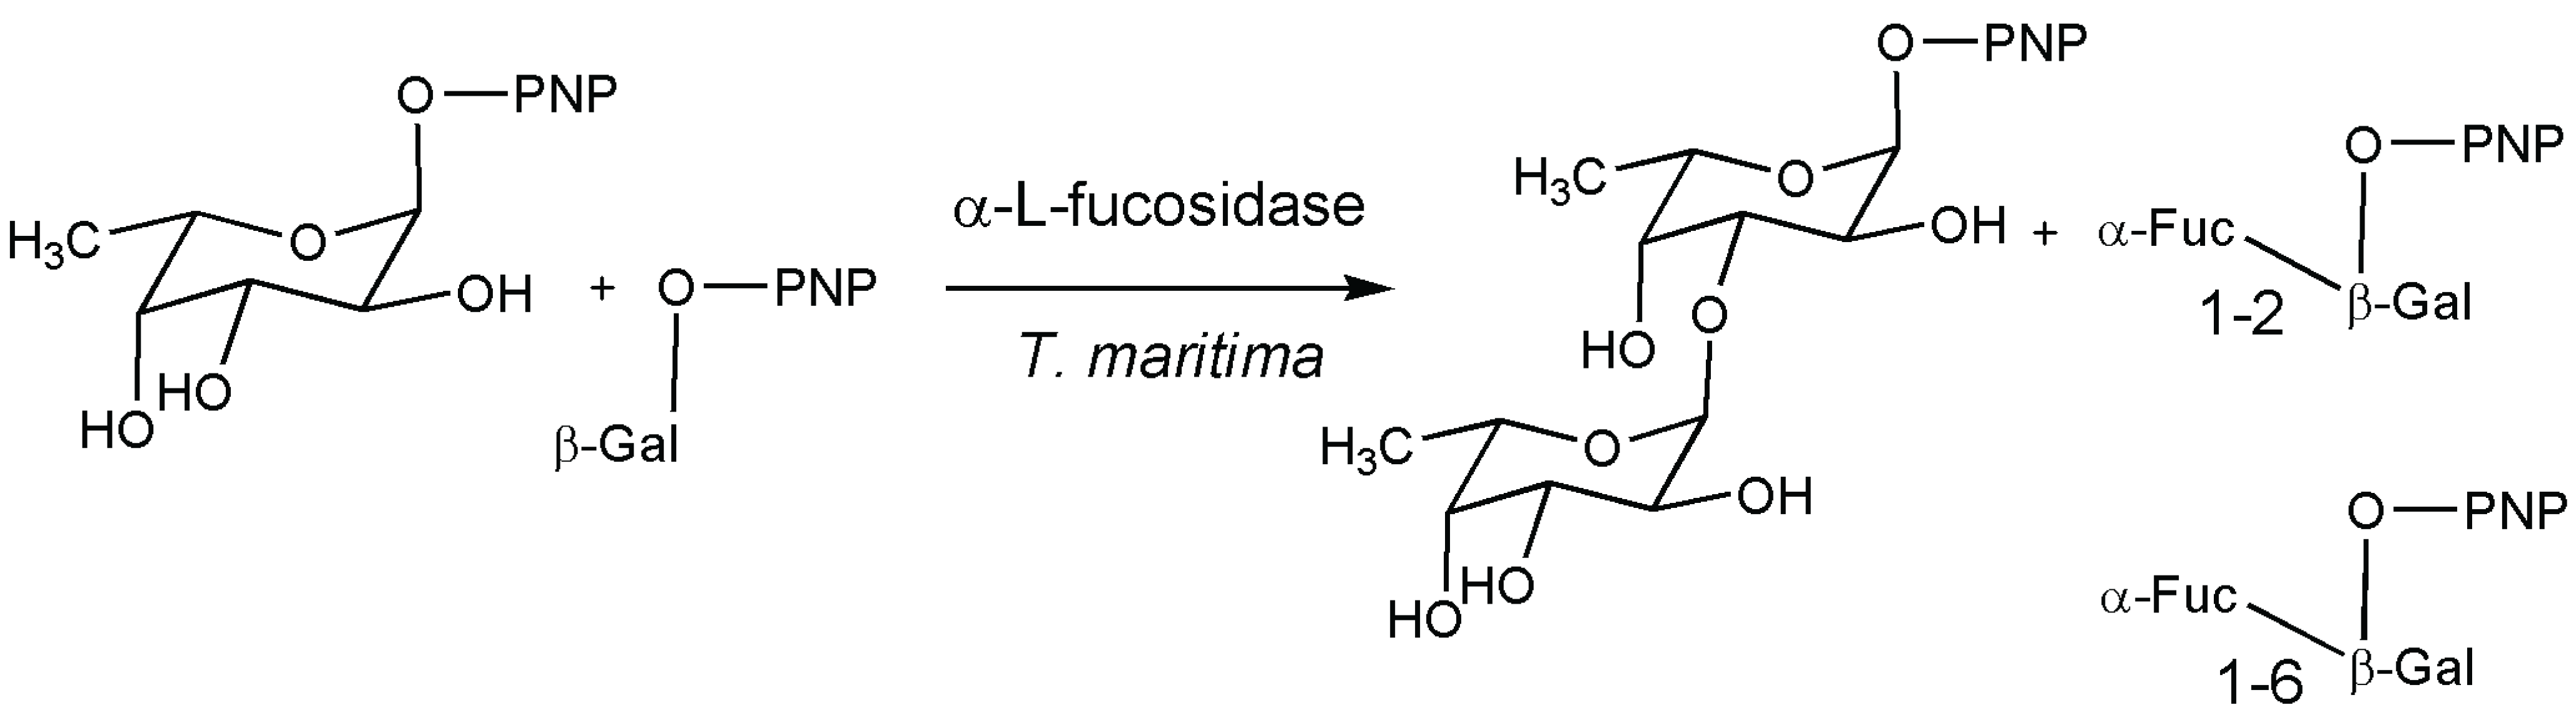 L-Glucose (L-(-)-Glucose), Glycosides